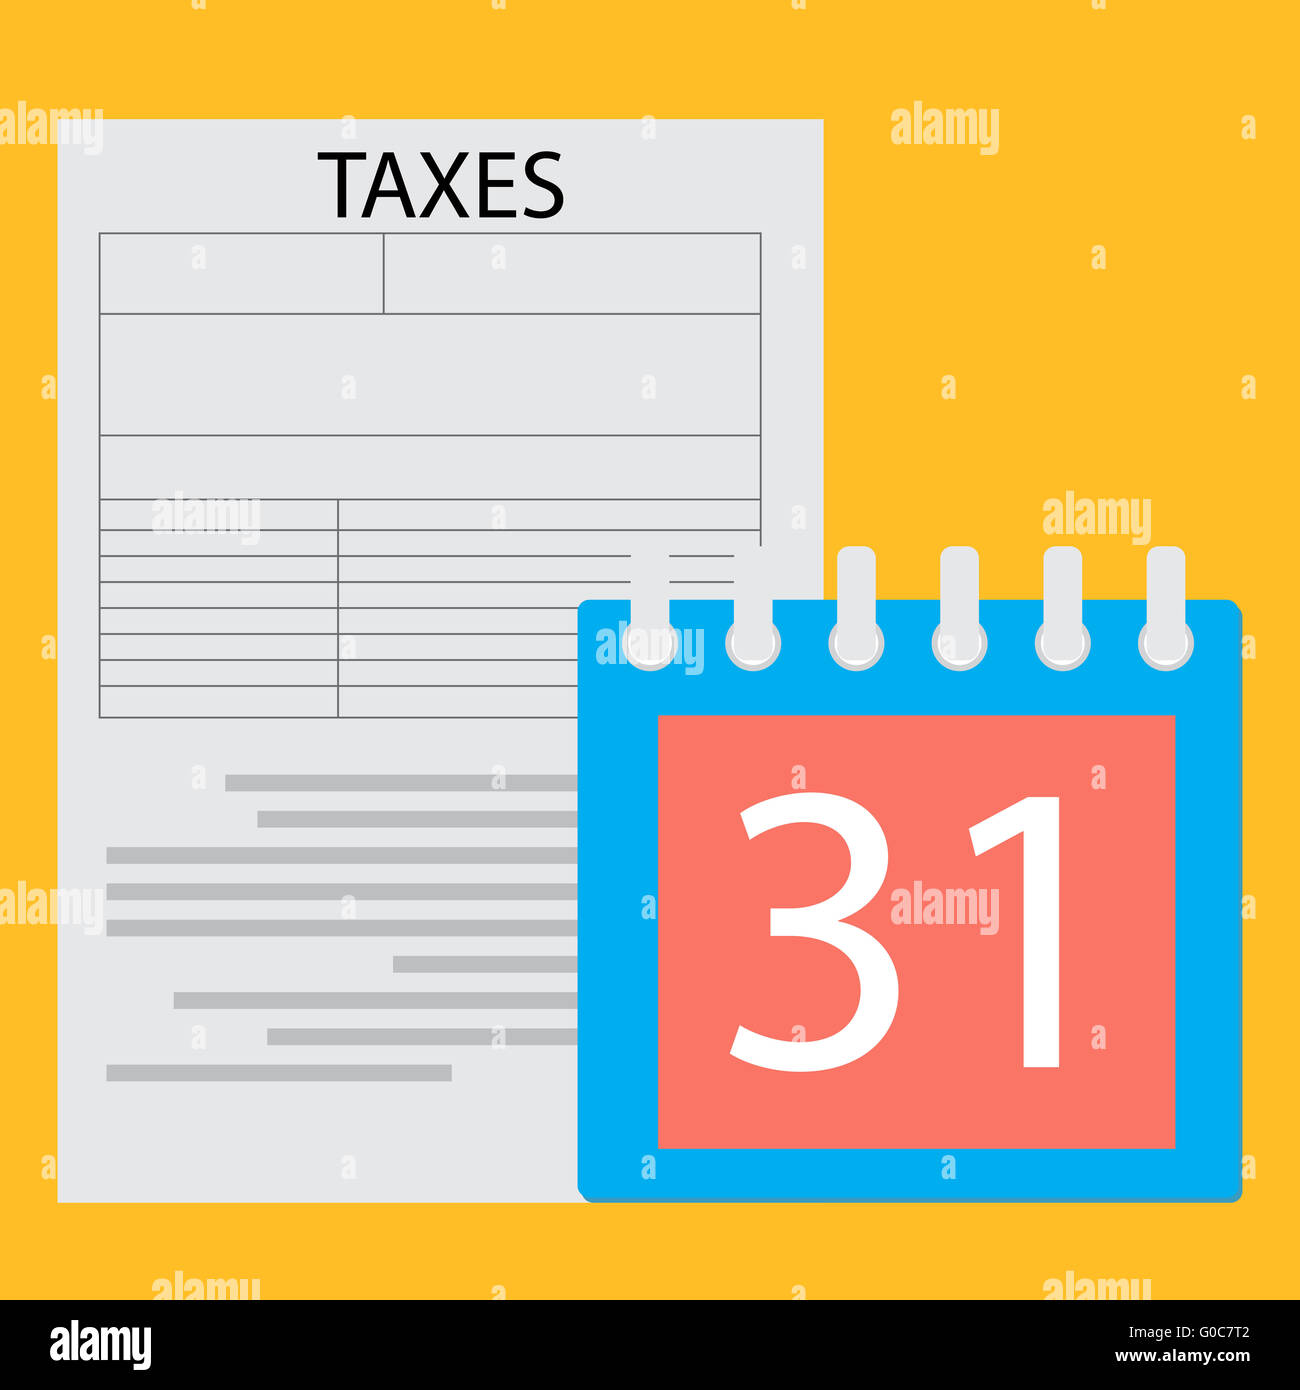 Fecha límite el día del impuesto. Página de formulario de impuestos y un día del calendario, el gobierno empresarial de pago. Vector diseño ilustración plana Foto de stock